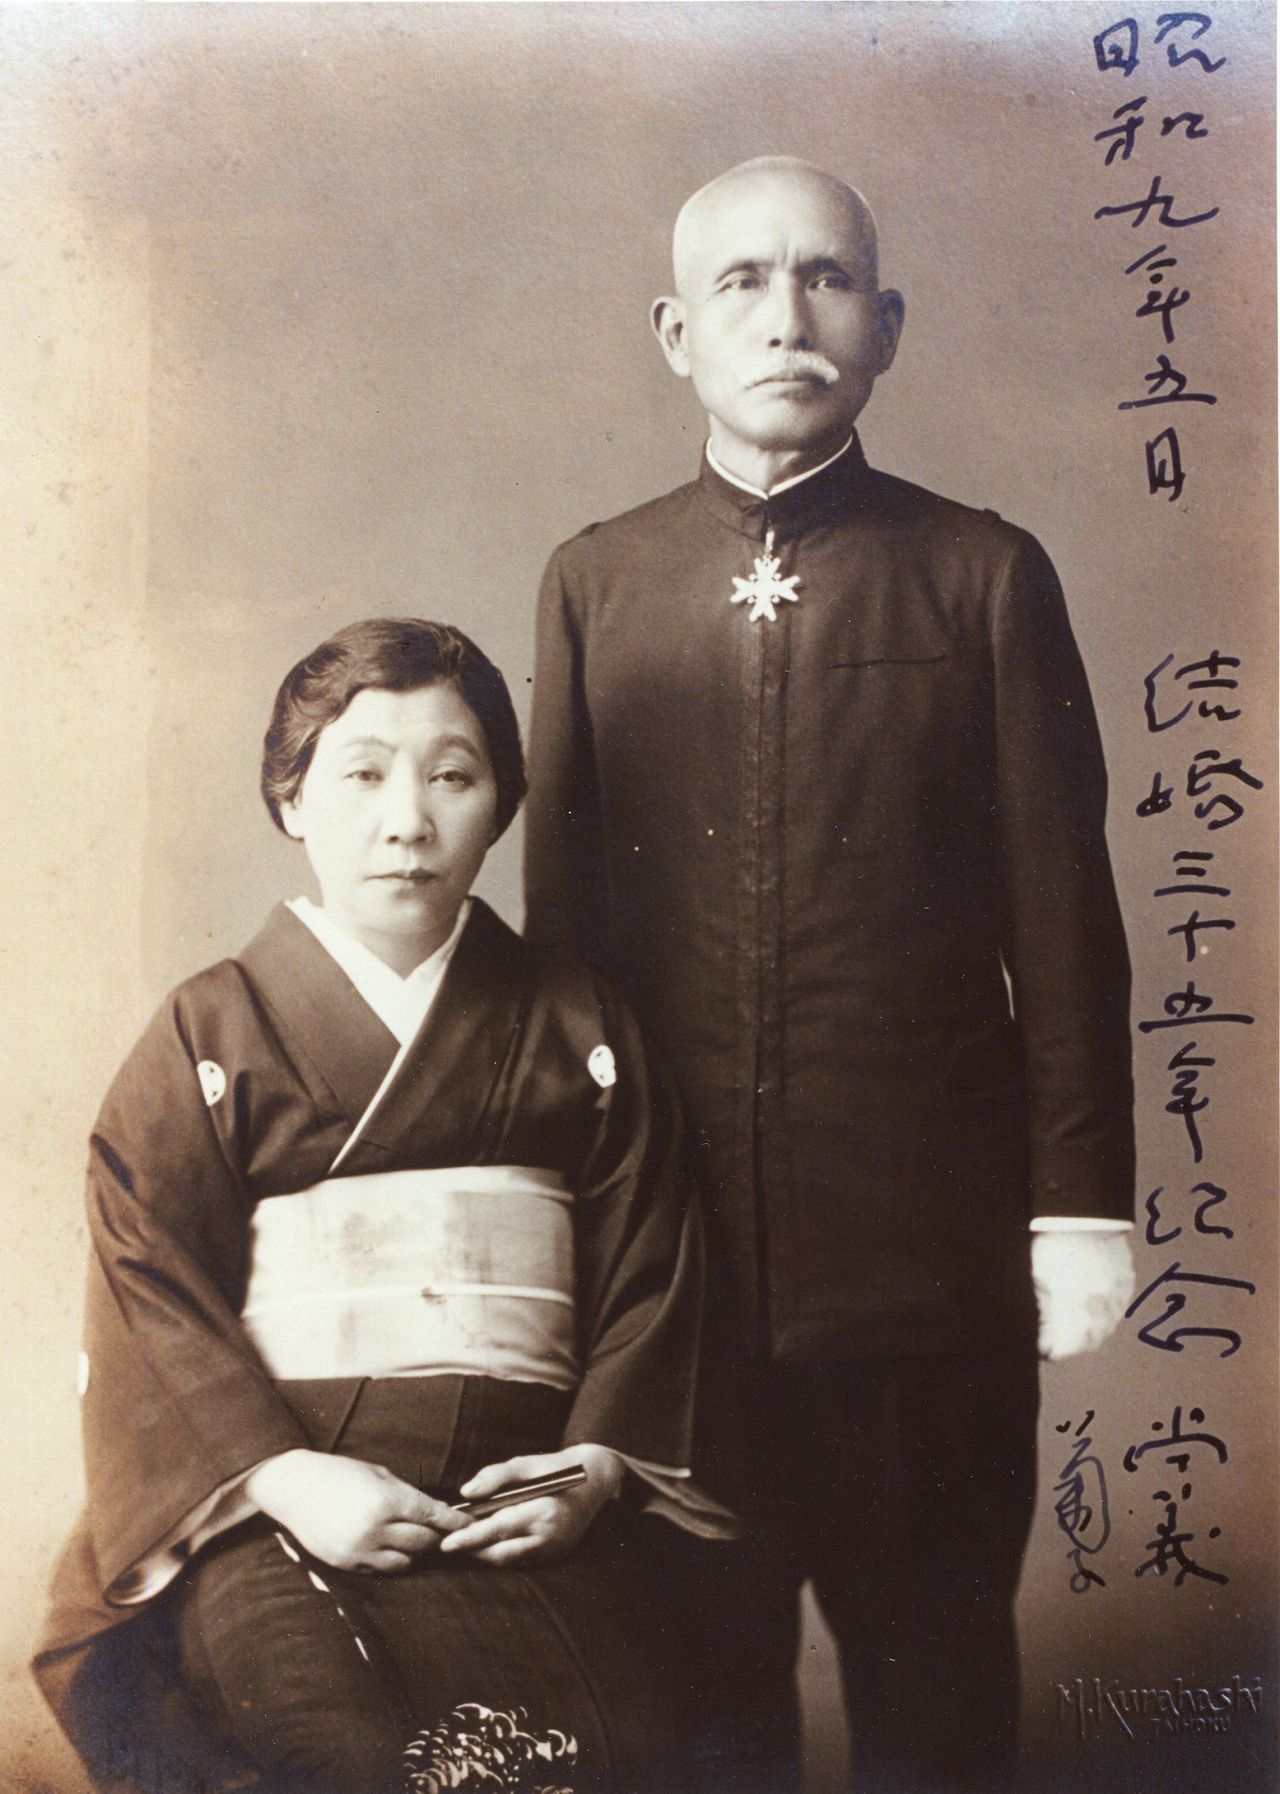 小川尚義，結婚35週年紀念照片（愛媛人物博物館提供）